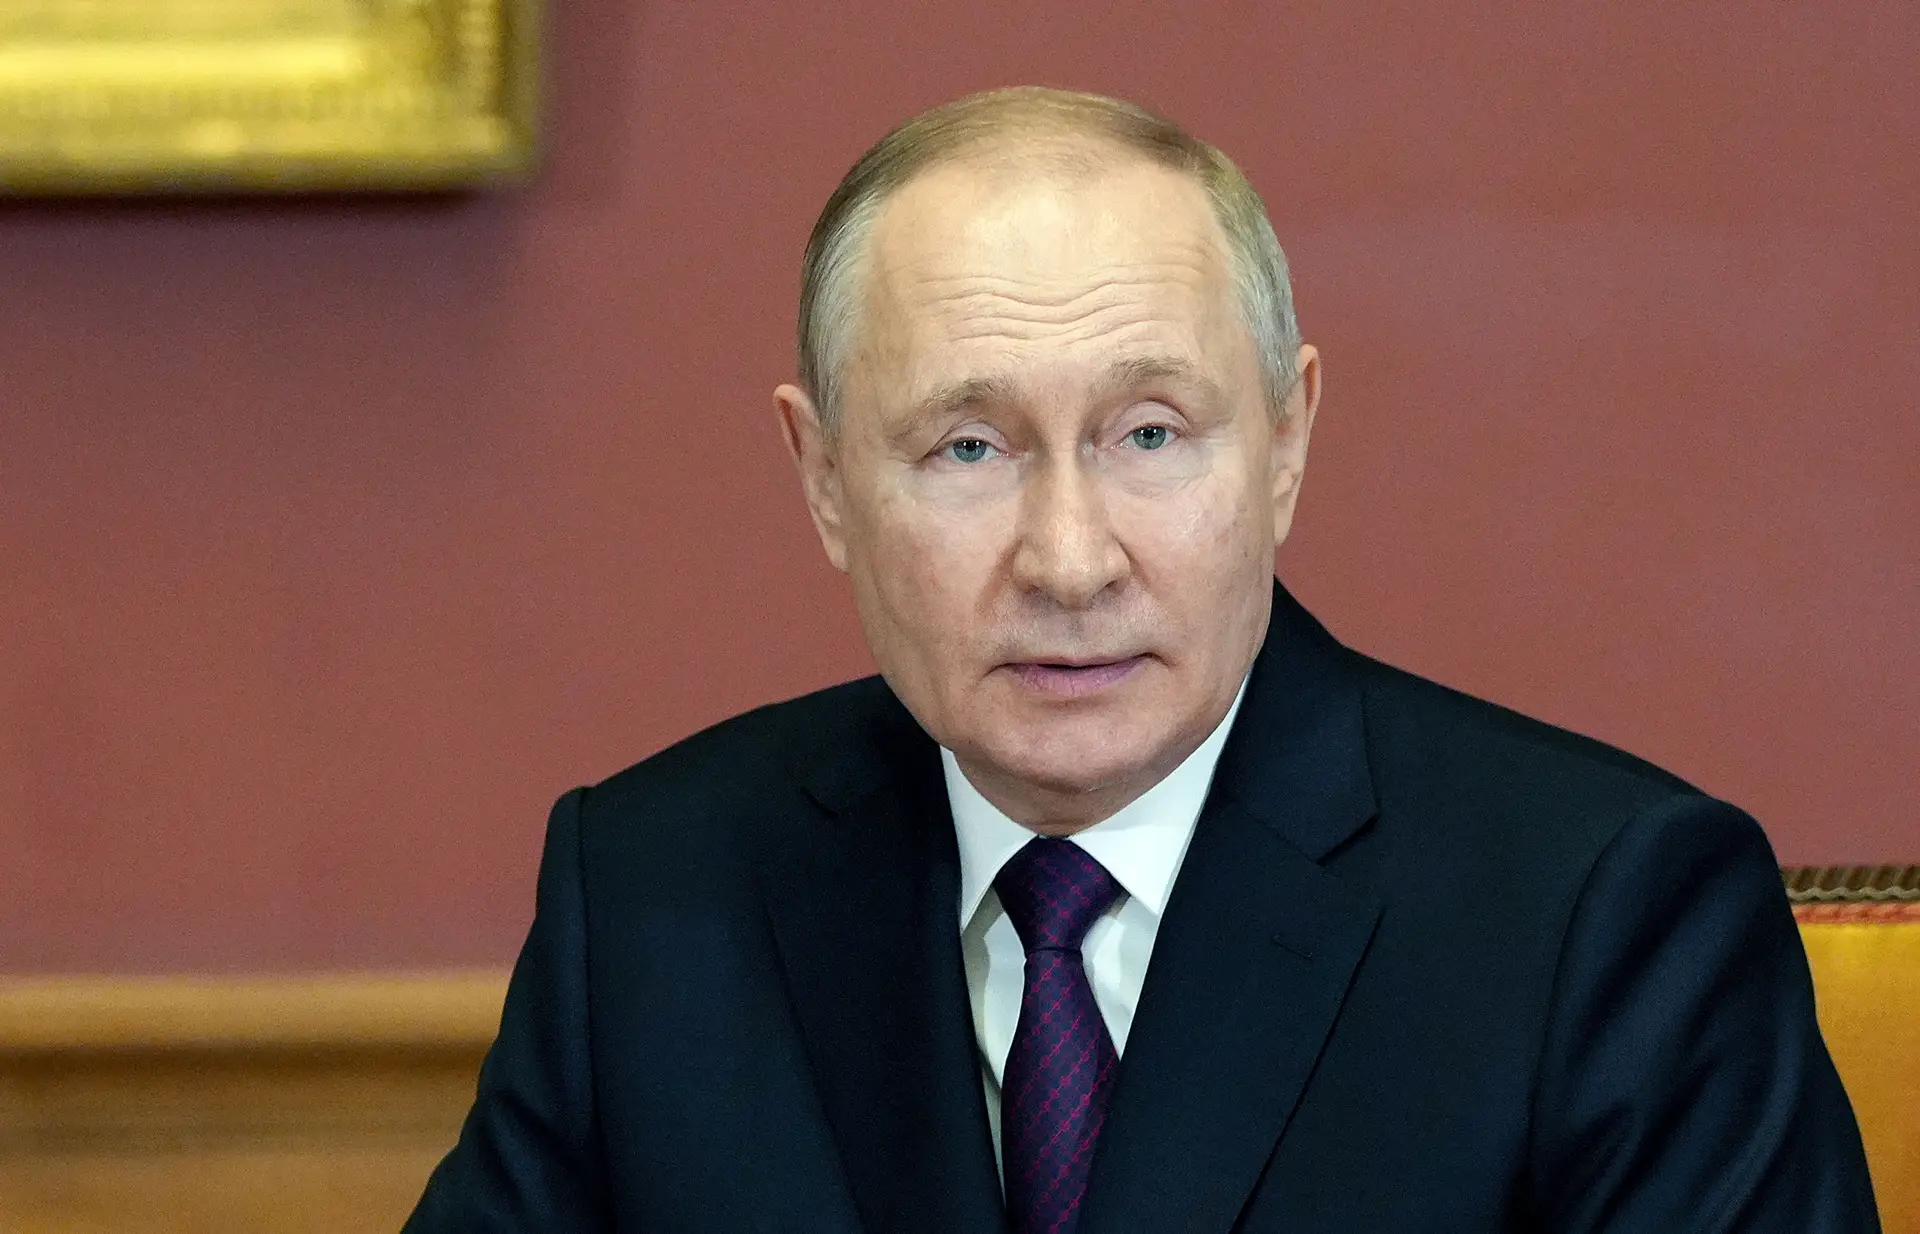 Os rumores em torno do estado de saúde do Presidente russo adensaram-se nos últimos meses